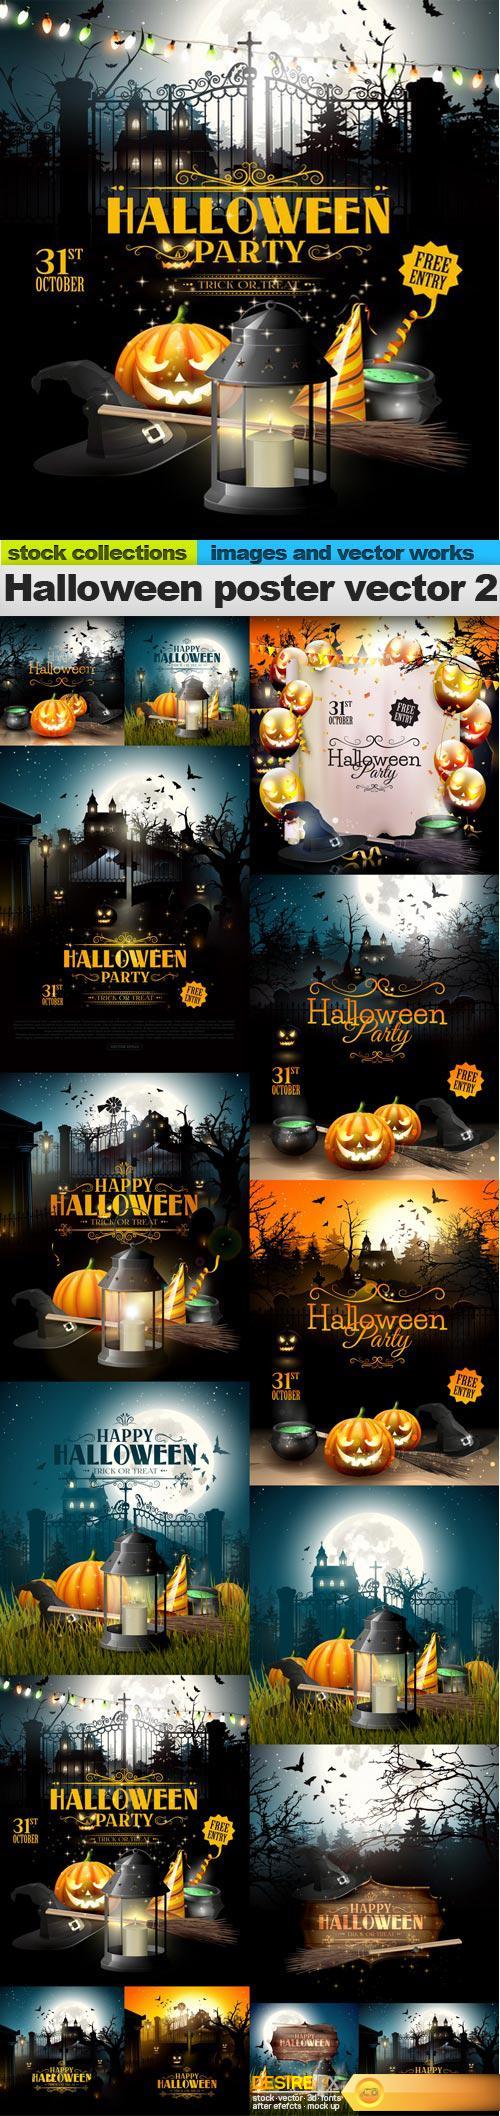 Halloween poster vector 2, 15 x EPS